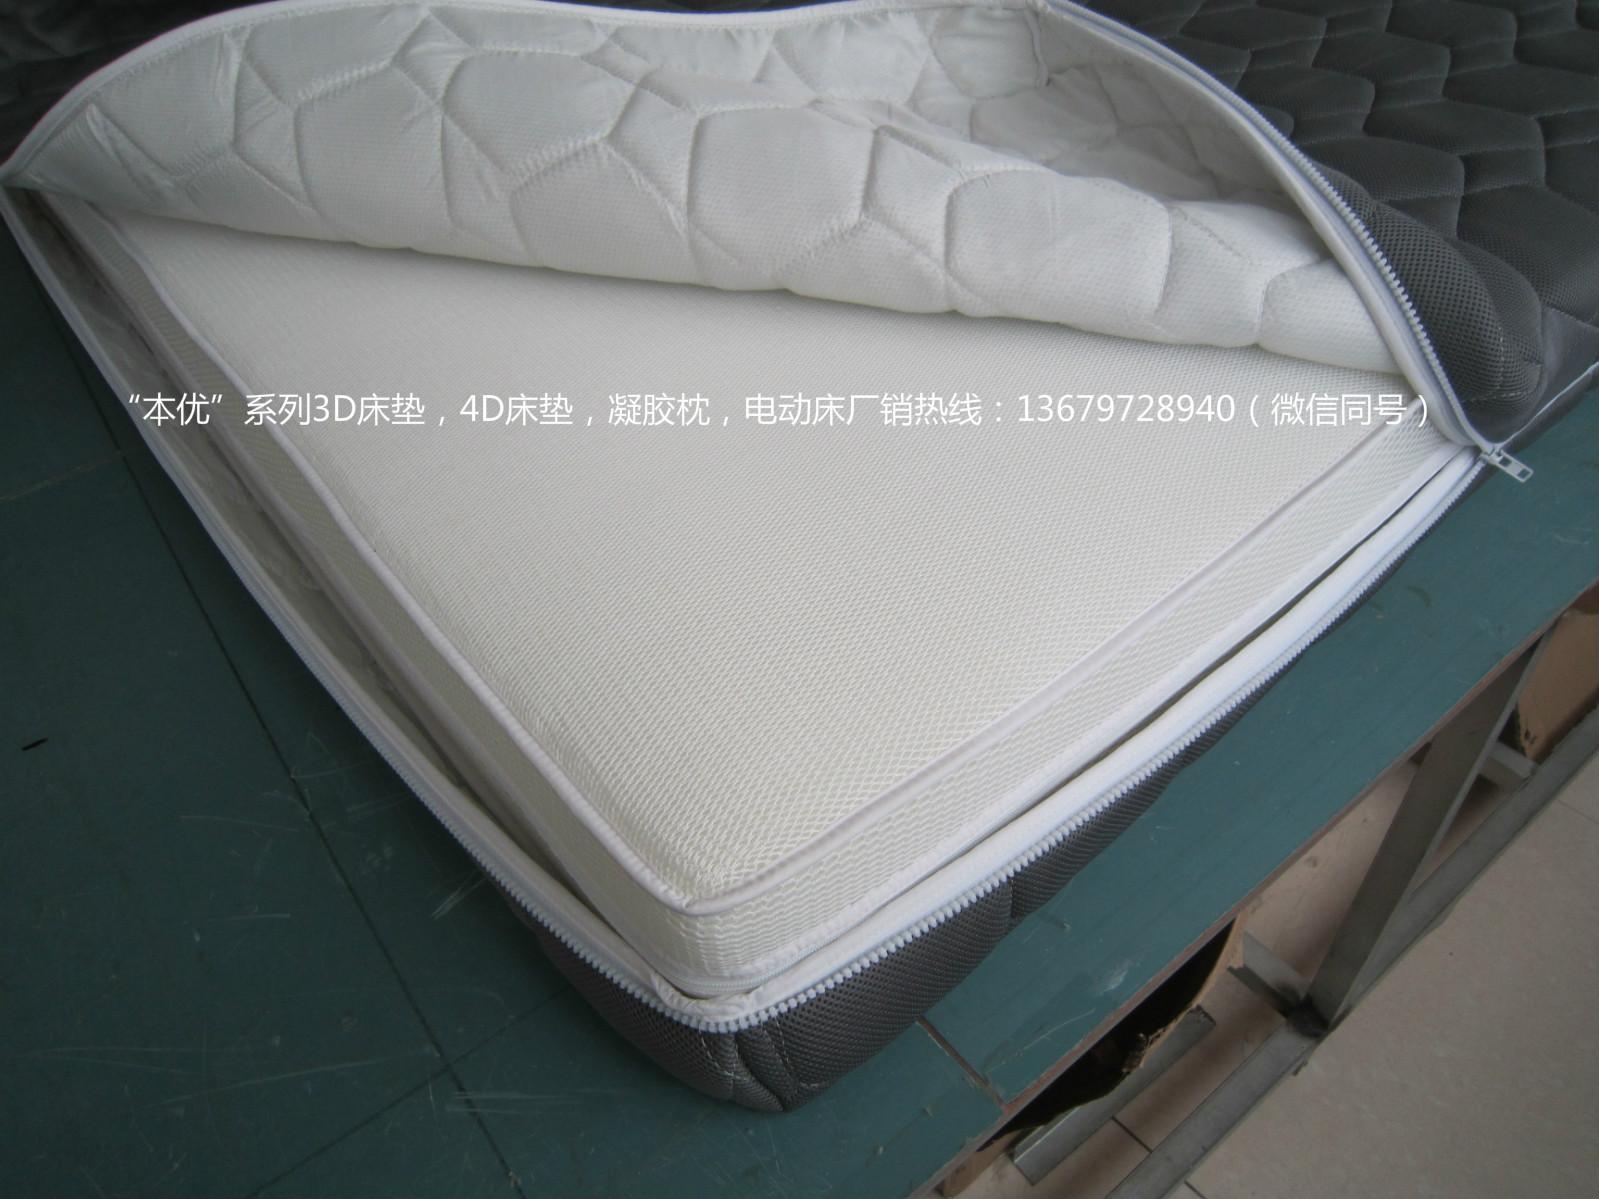 什么材料的床垫比较好？床垫什么品牌好?3D床垫材质